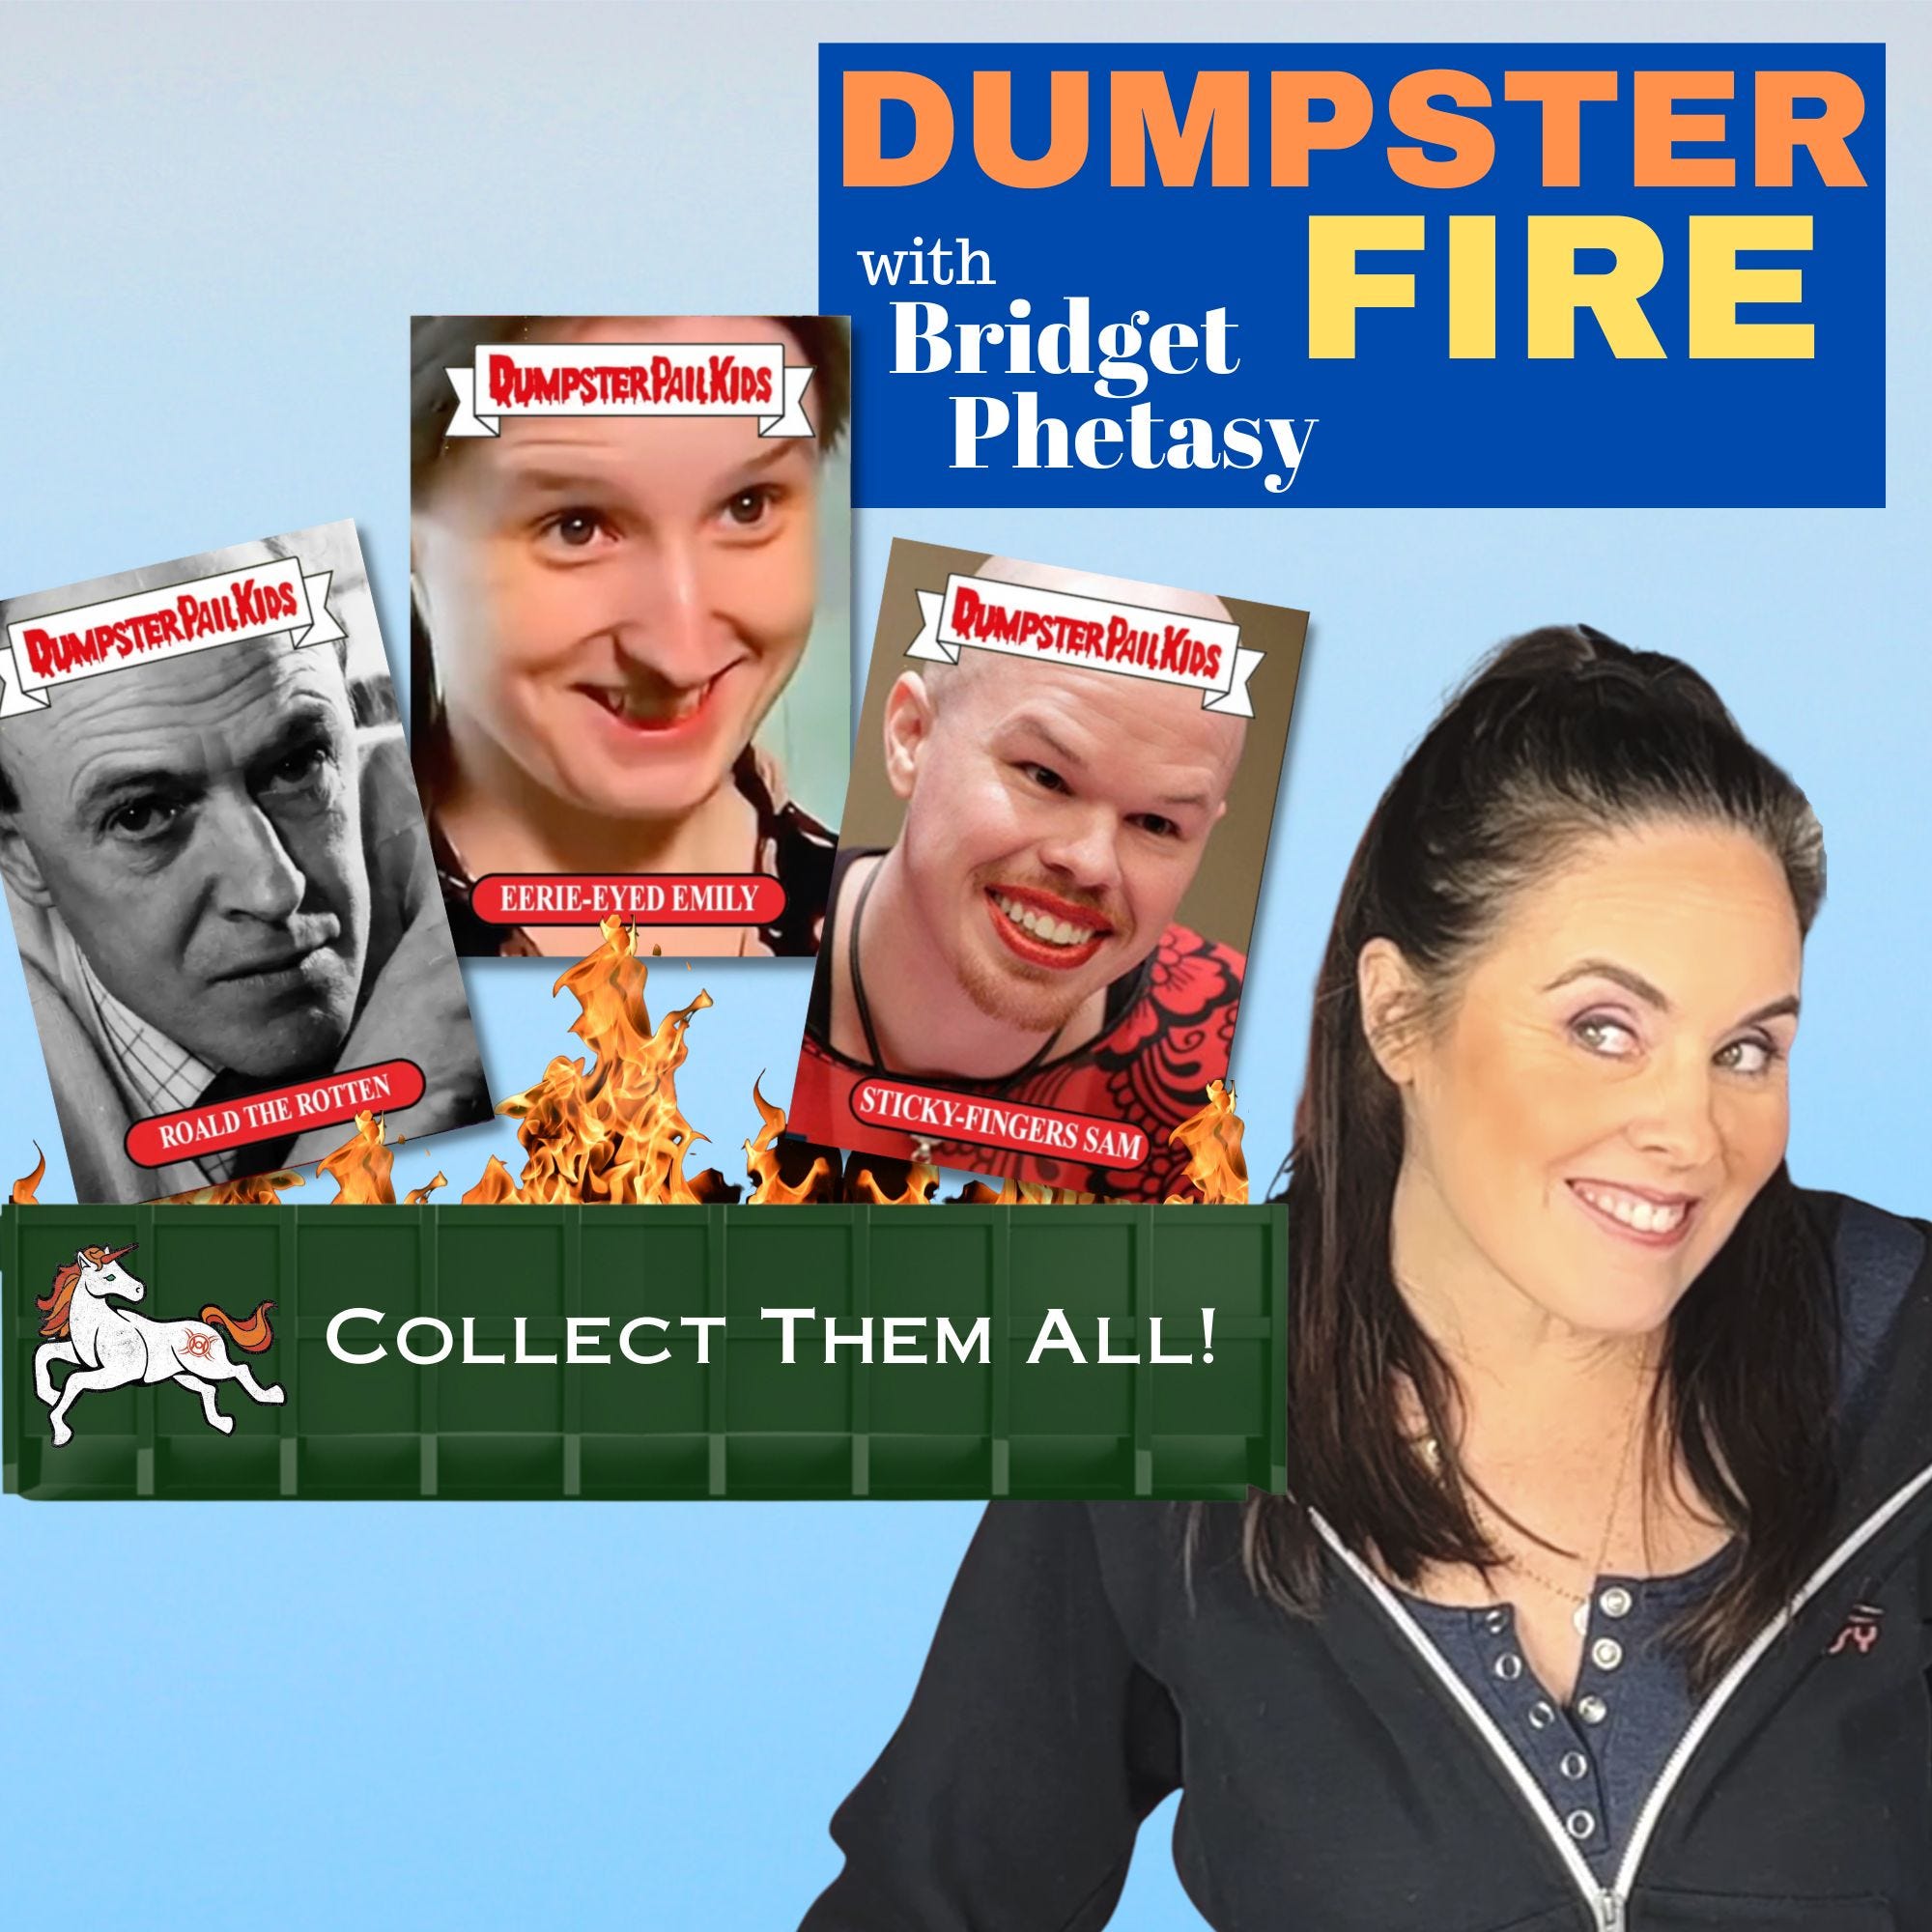 Dumpster Fire 108 - The Dumpster Pail Kids